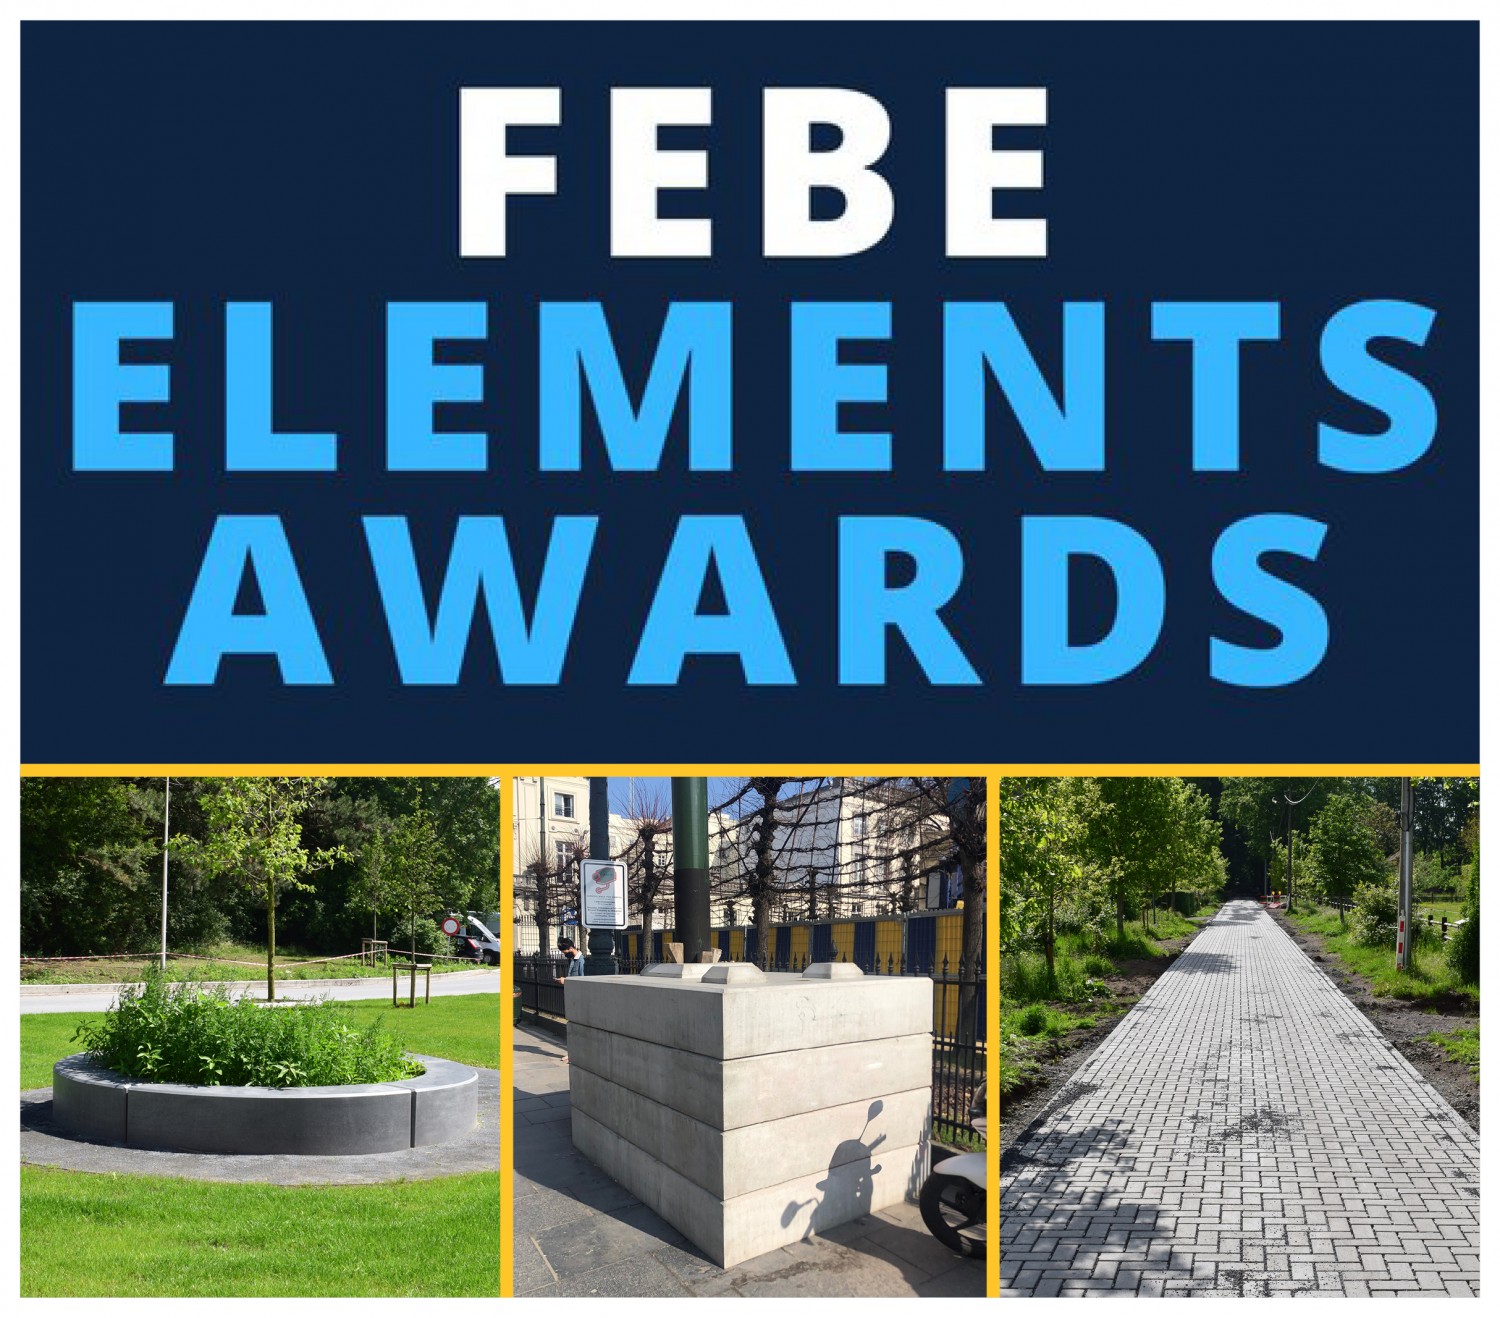 FEBE Elements Awards 21